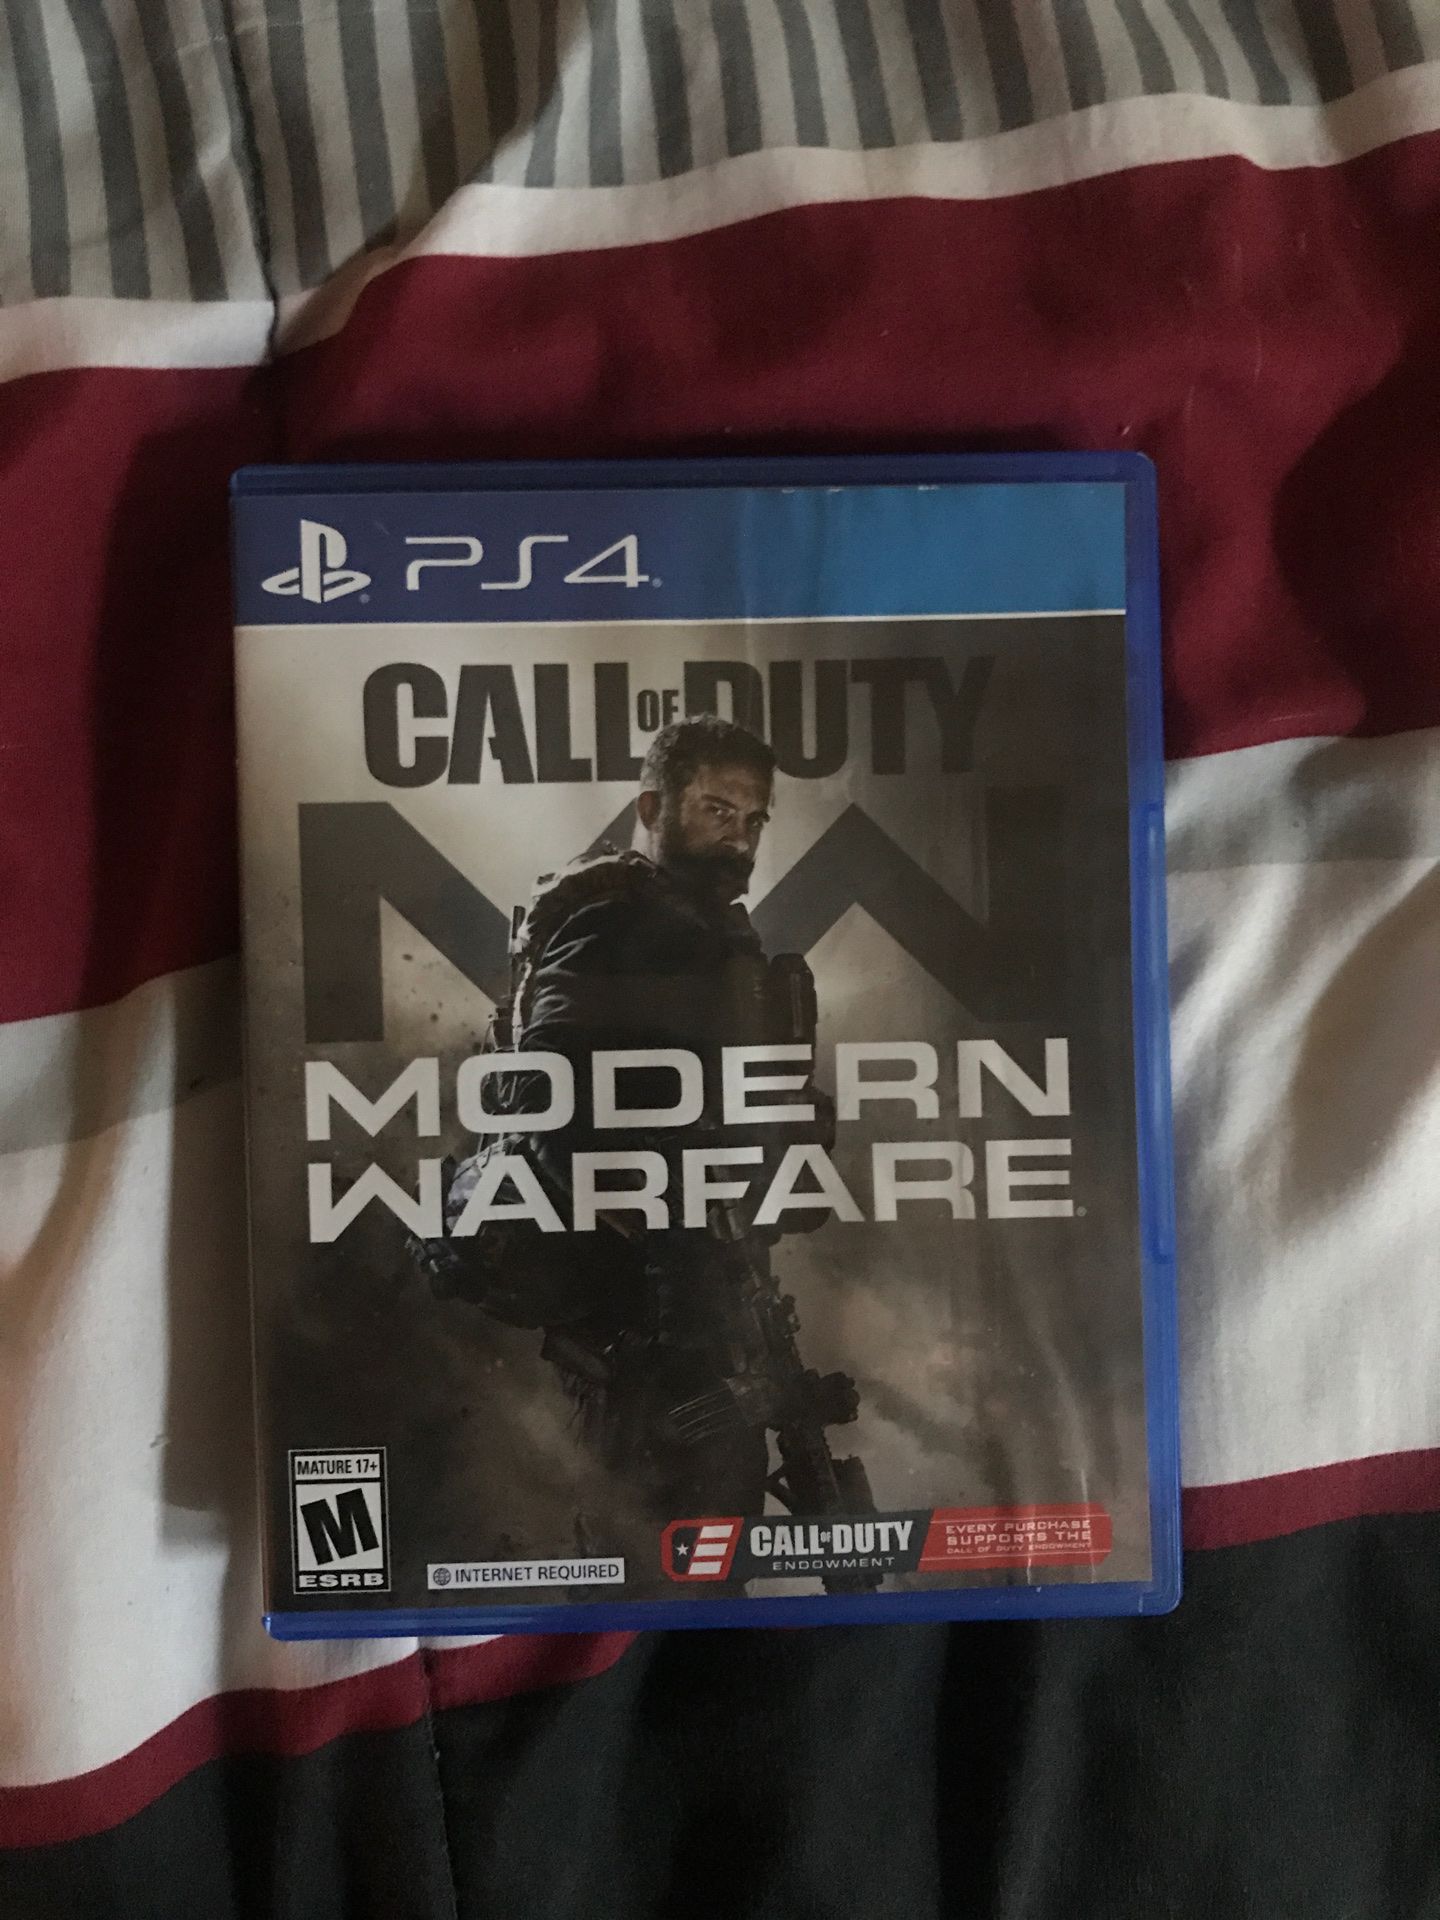 Call of duty modern warfare PlayStation 4